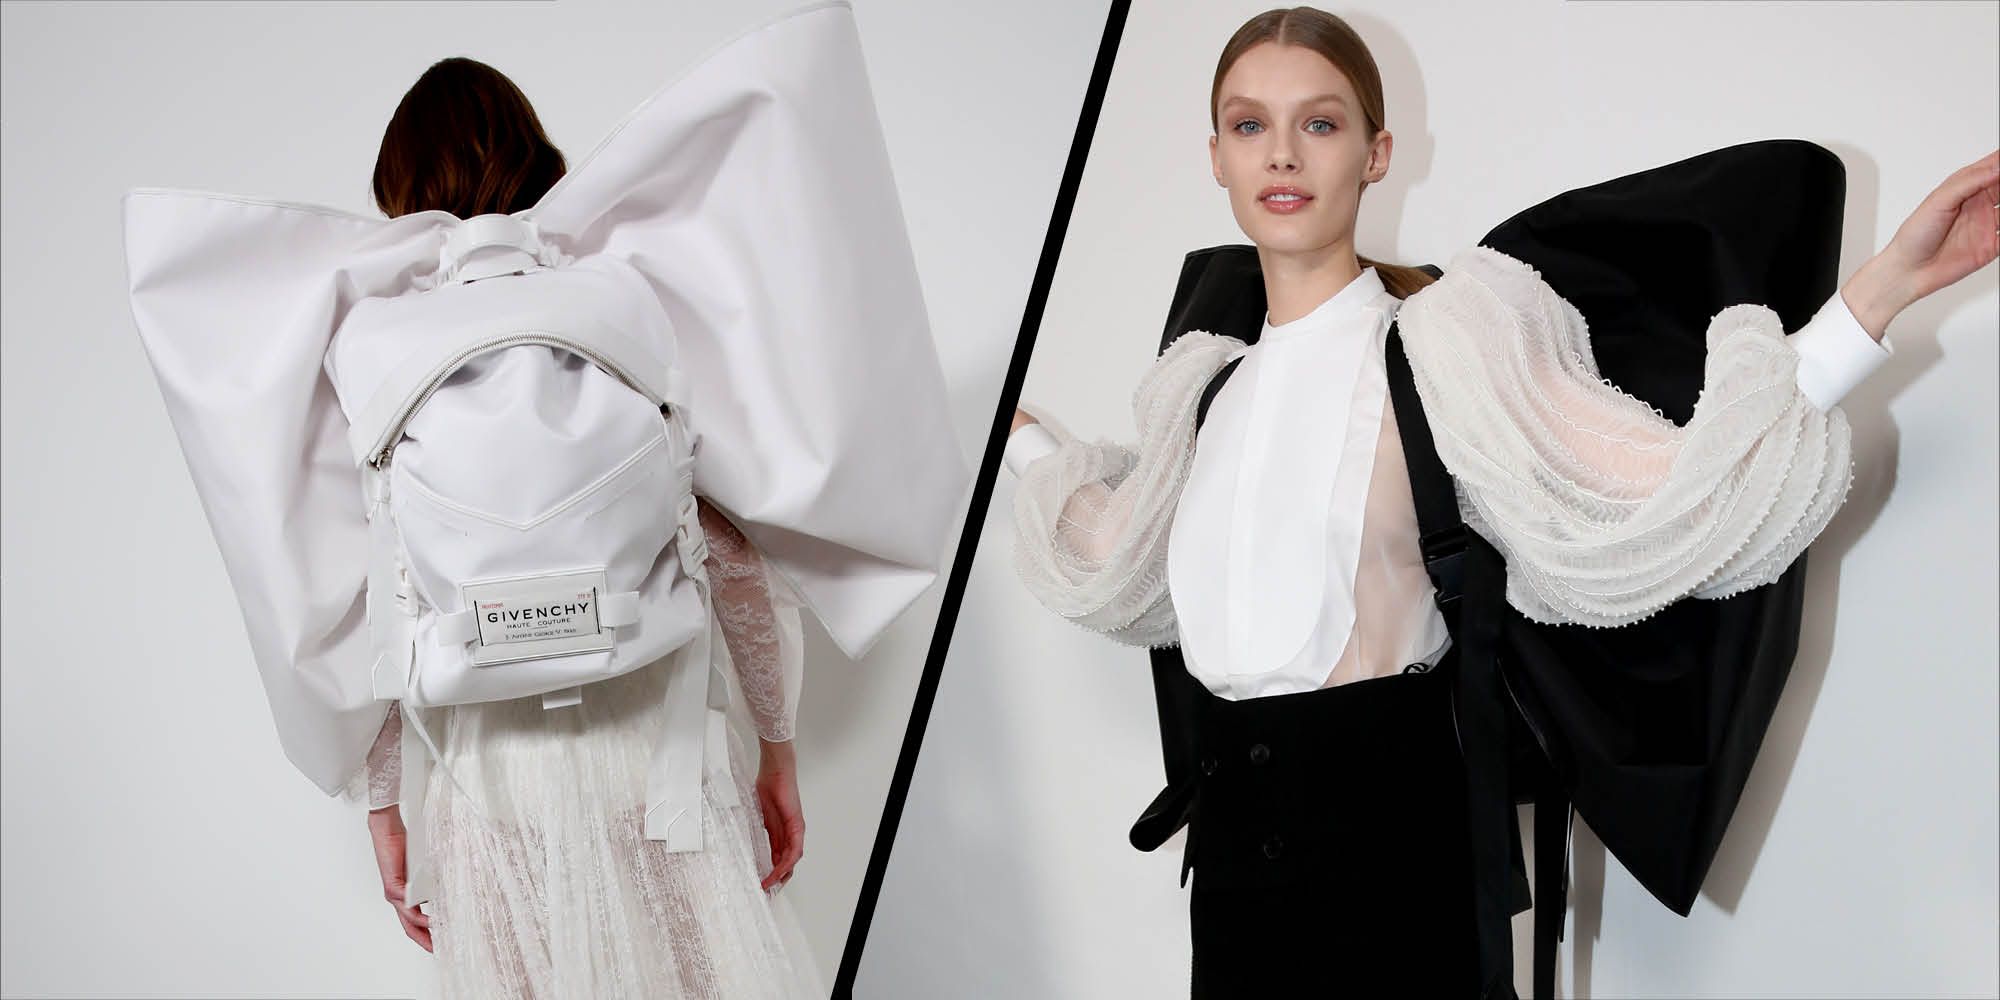 Î‘Ï€Î¿Ï„Î­Î»ÎµÏƒÎ¼Î± ÎµÎ¹ÎºÏŒÎ½Î±Ï‚ Î³Î¹Î± backpacks SS19 Givenchy Couture show